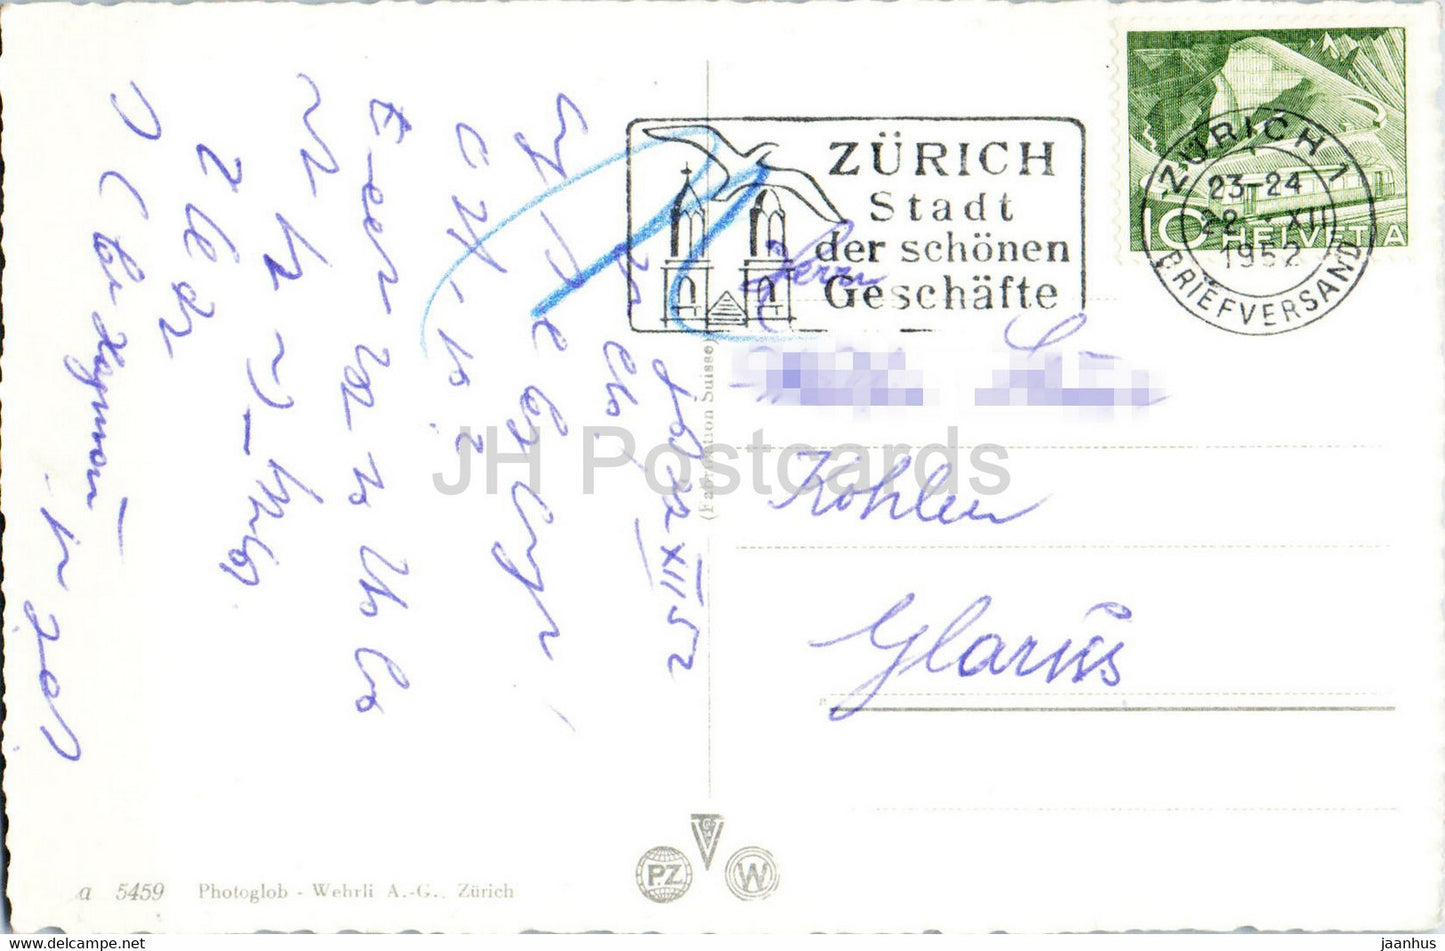 Zürcher Wehrmann Denkmal auf der Forch - Denkmal - 5459 - alte Postkarte - 1952 - Schweiz - gebraucht